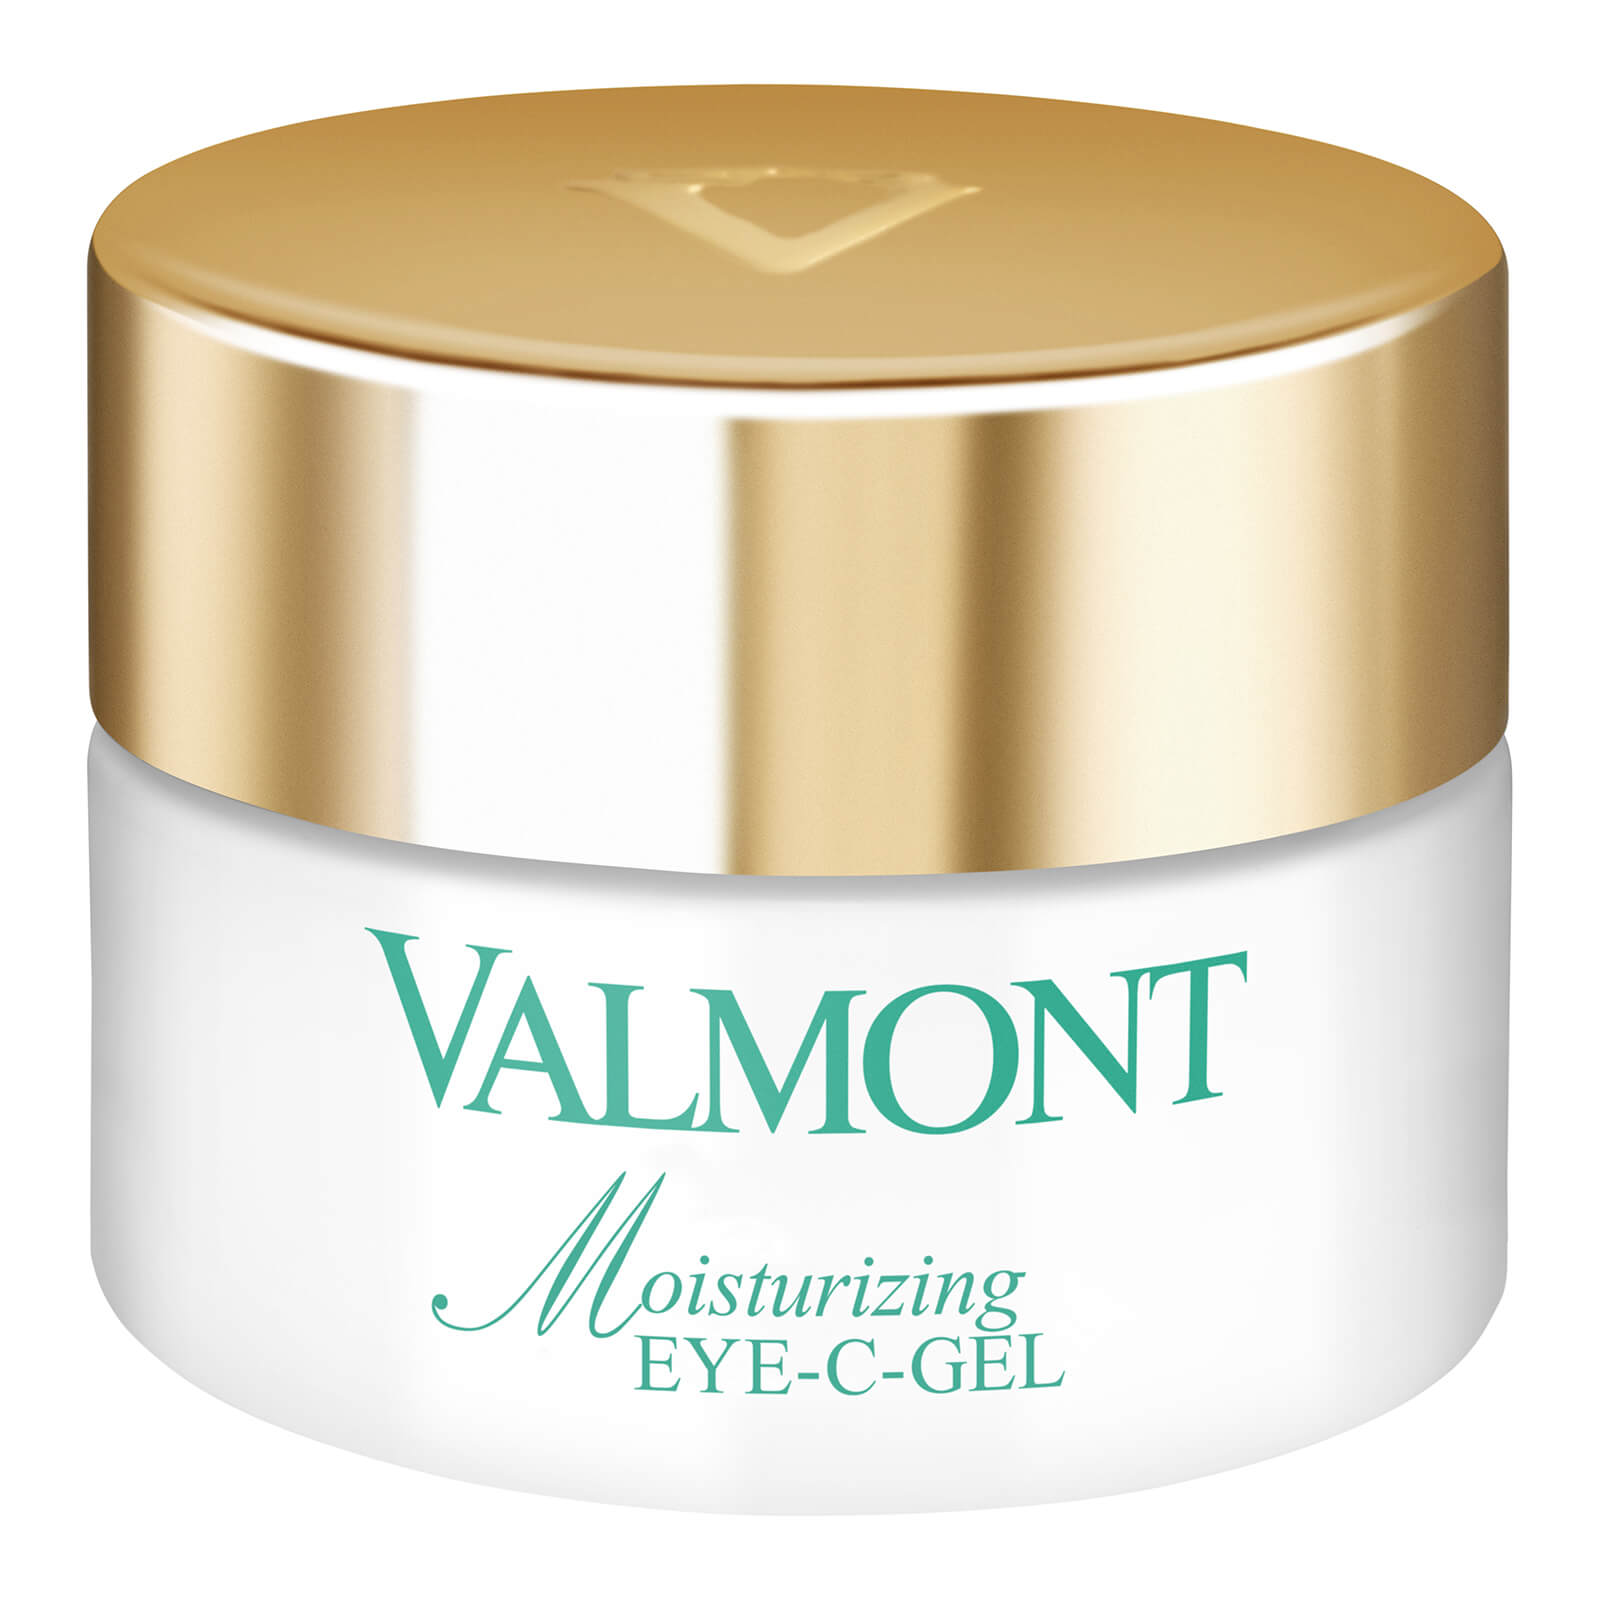 Gel hidratante Moisturizing Eye-C-Gel de Valmont